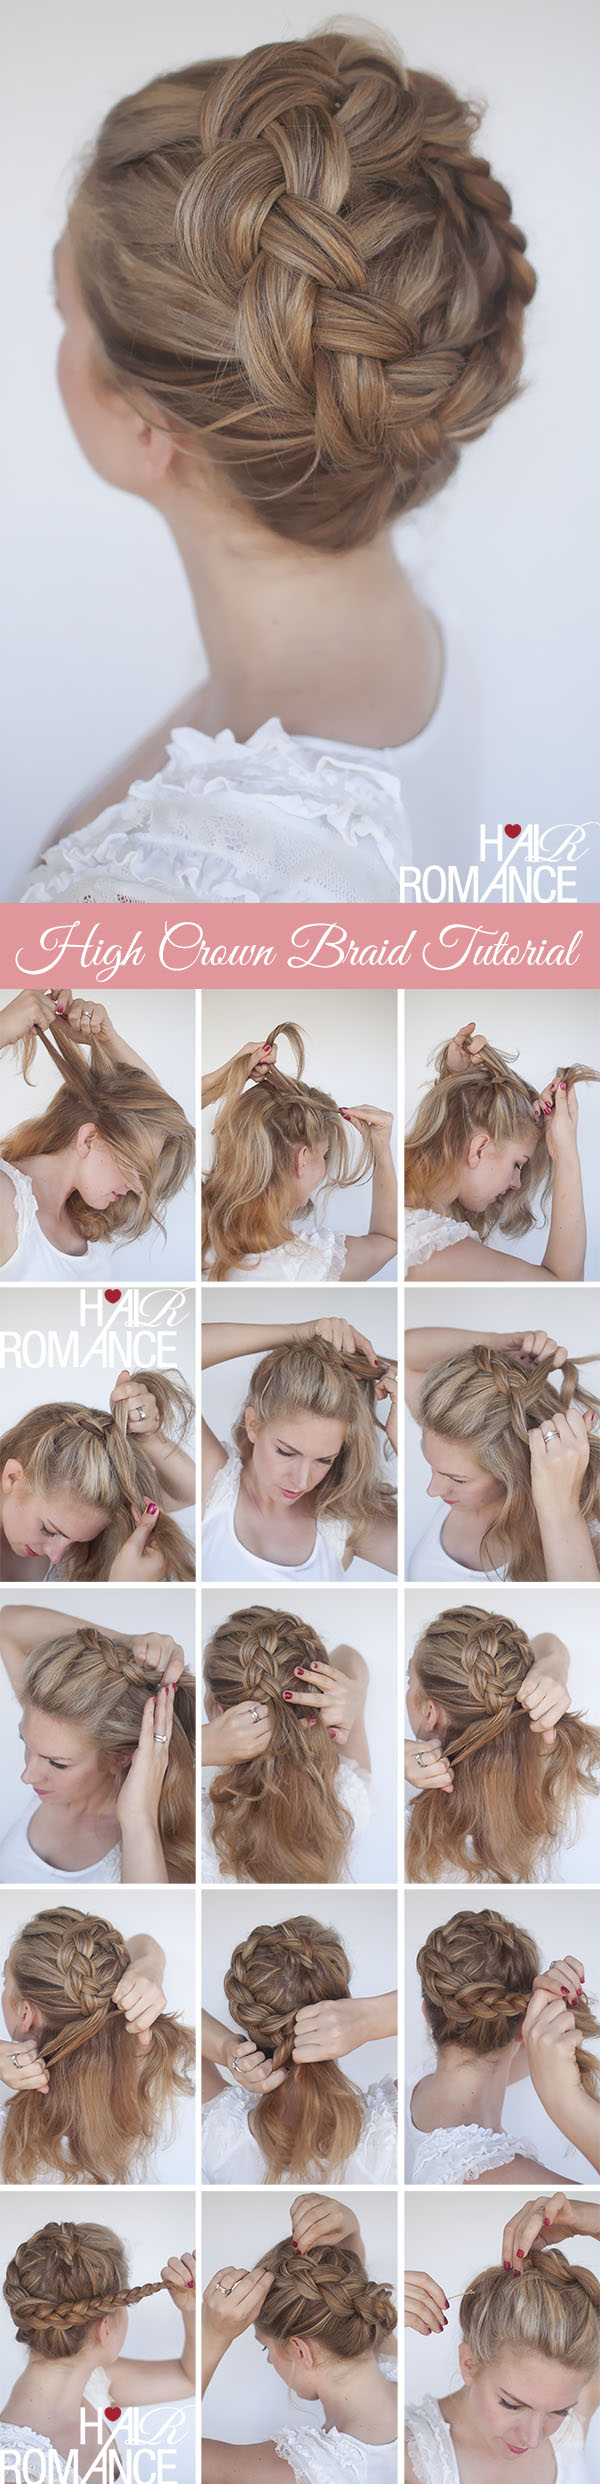 Hair-romance-braided-crown-hairstyle-tutorial